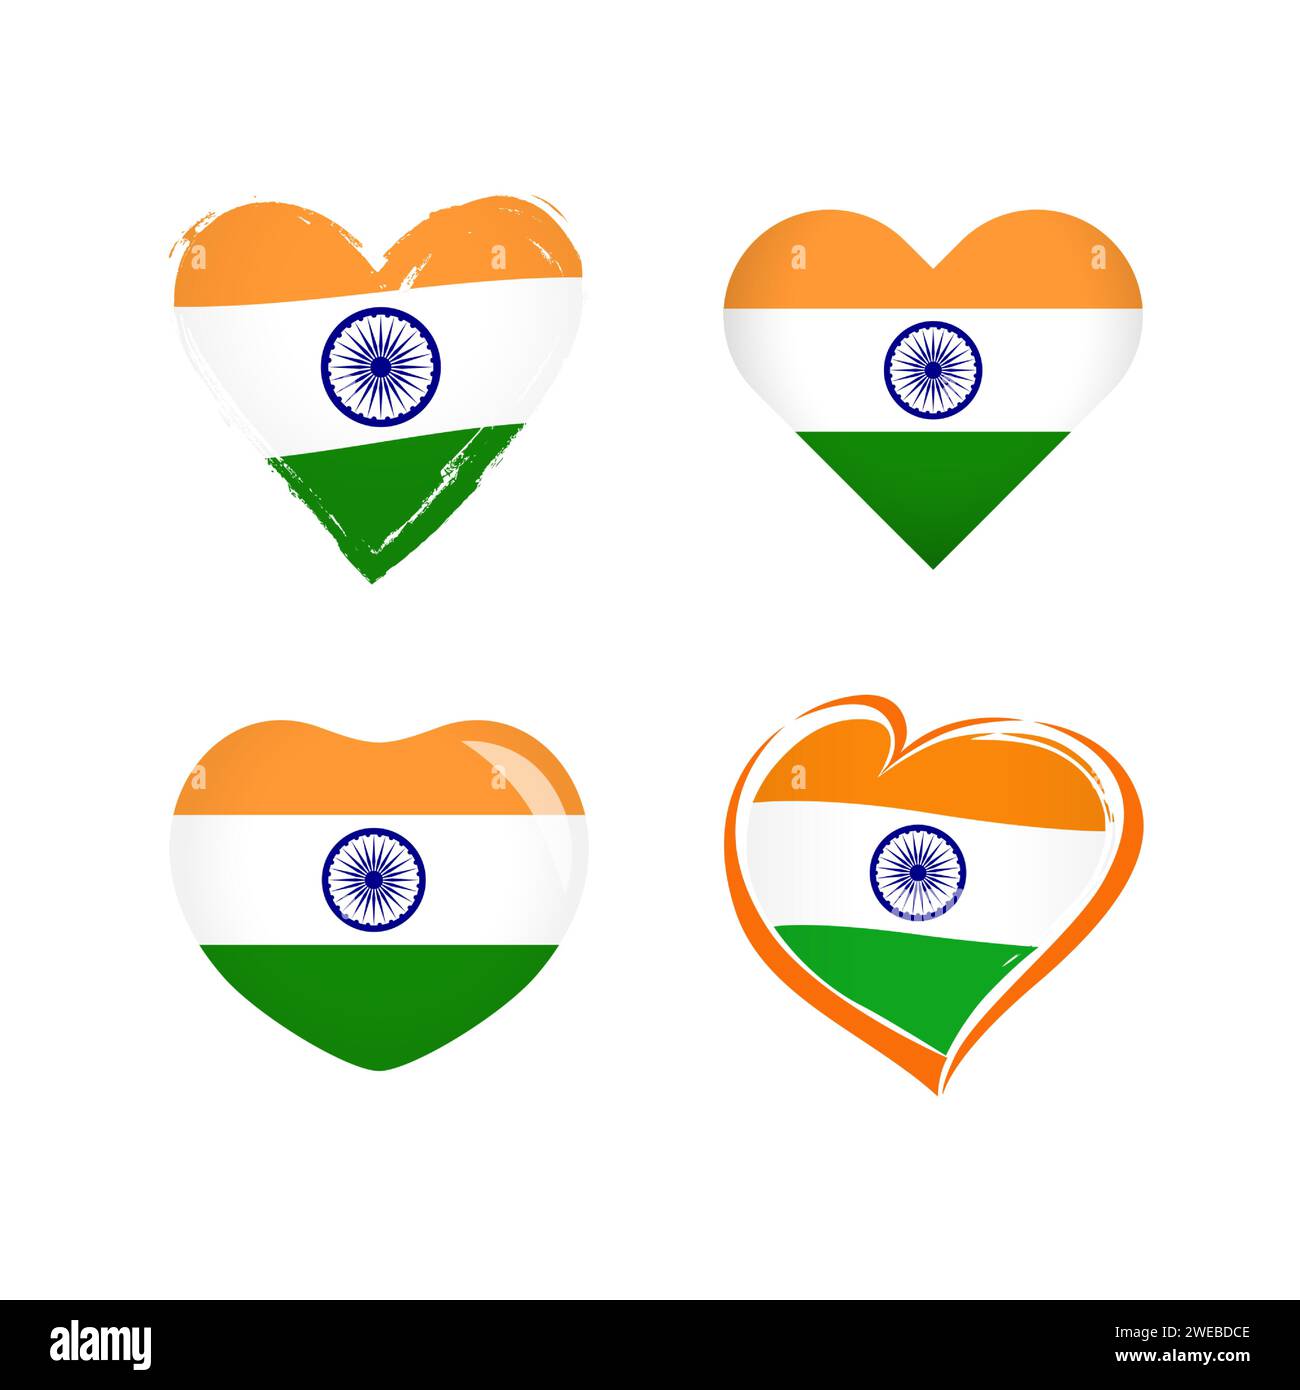 Set di icone creative a forma di cuore con bandiera dell'India. Raccolta di simboli grafici. Benvenuto in India, benvenuto all'insegna turistica di Delhi. Logo sportivo o da viaggio Illustrazione Vettoriale